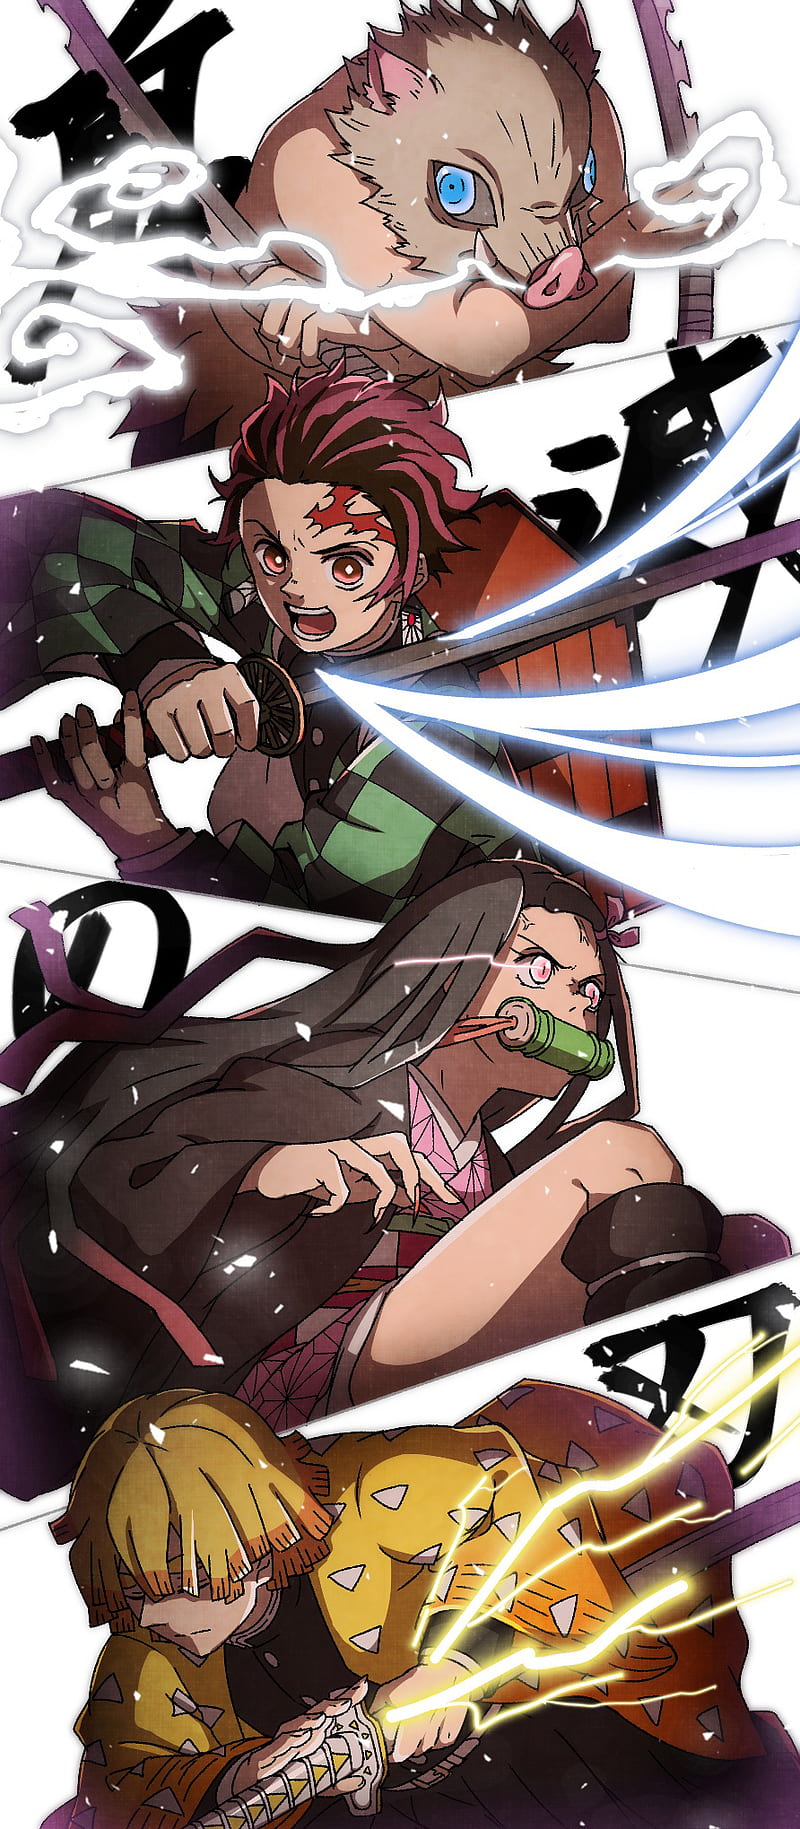 Wallpaper ID 306230  Anime Demon Slayer Kimetsu no Yaiba Phone Wallpaper  Nezuko Kamado 1440x3200 free download